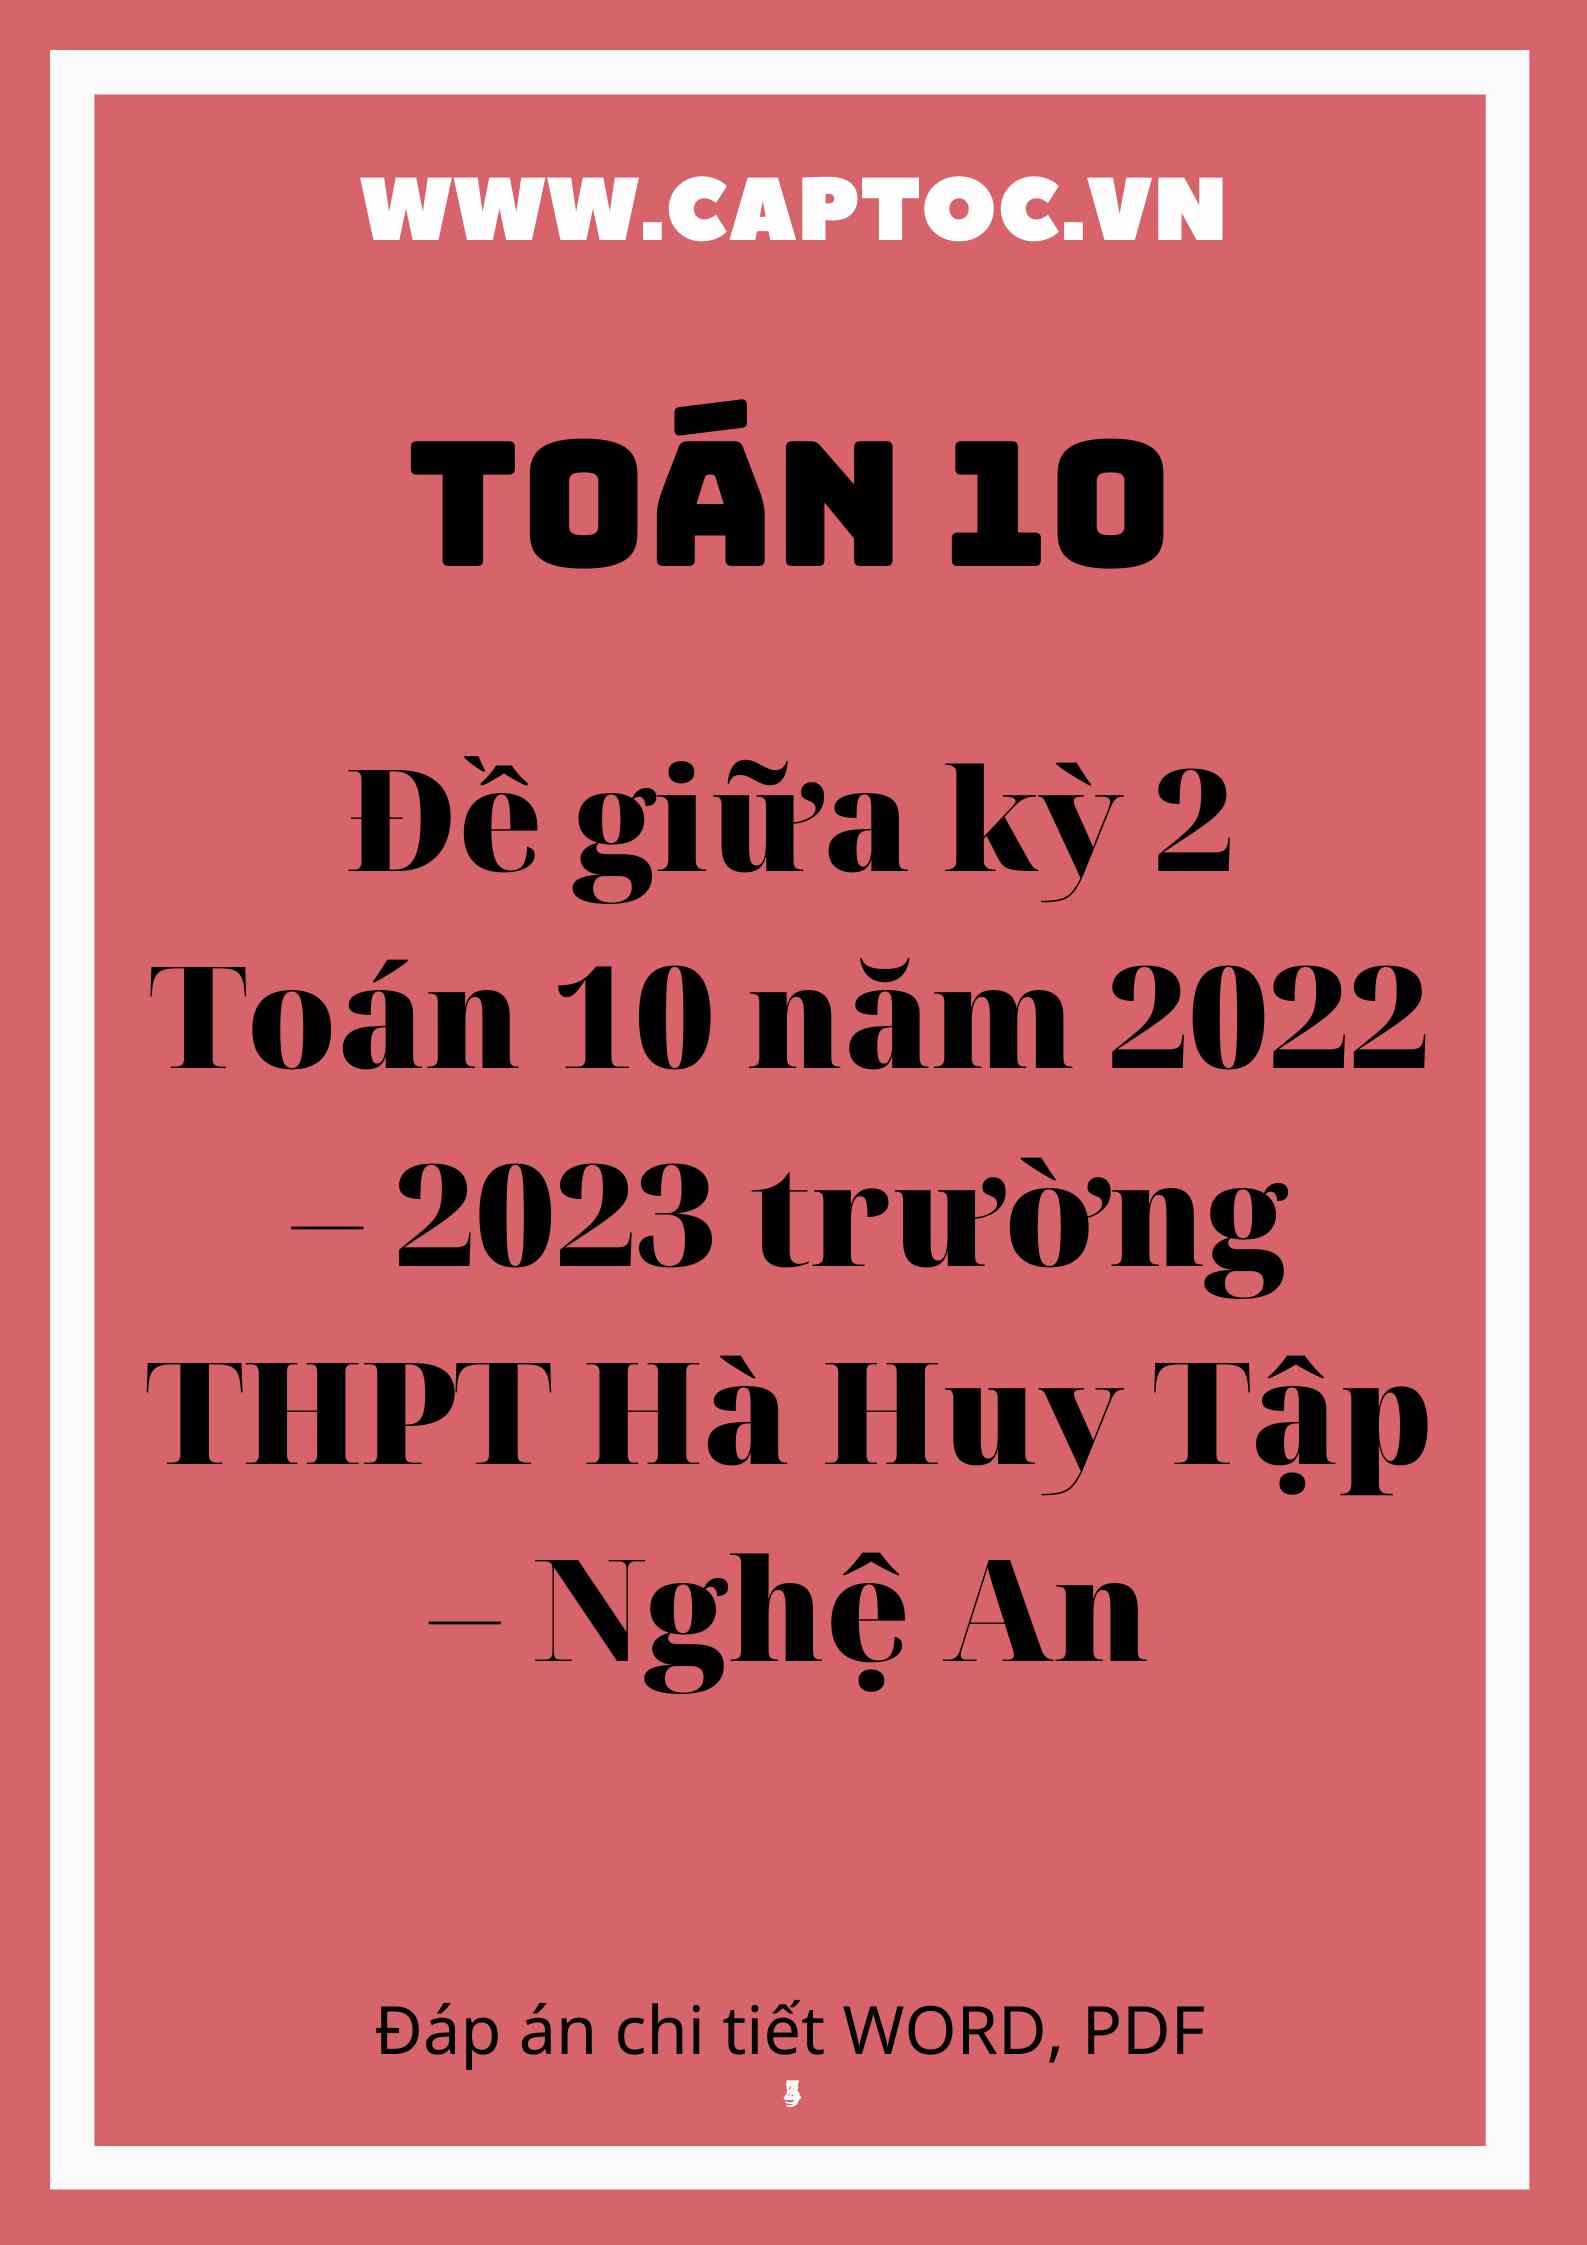 Đề giữa kỳ 2 Toán 10 năm 2022 – 2023 trường THPT Hà Huy Tập – Nghệ An